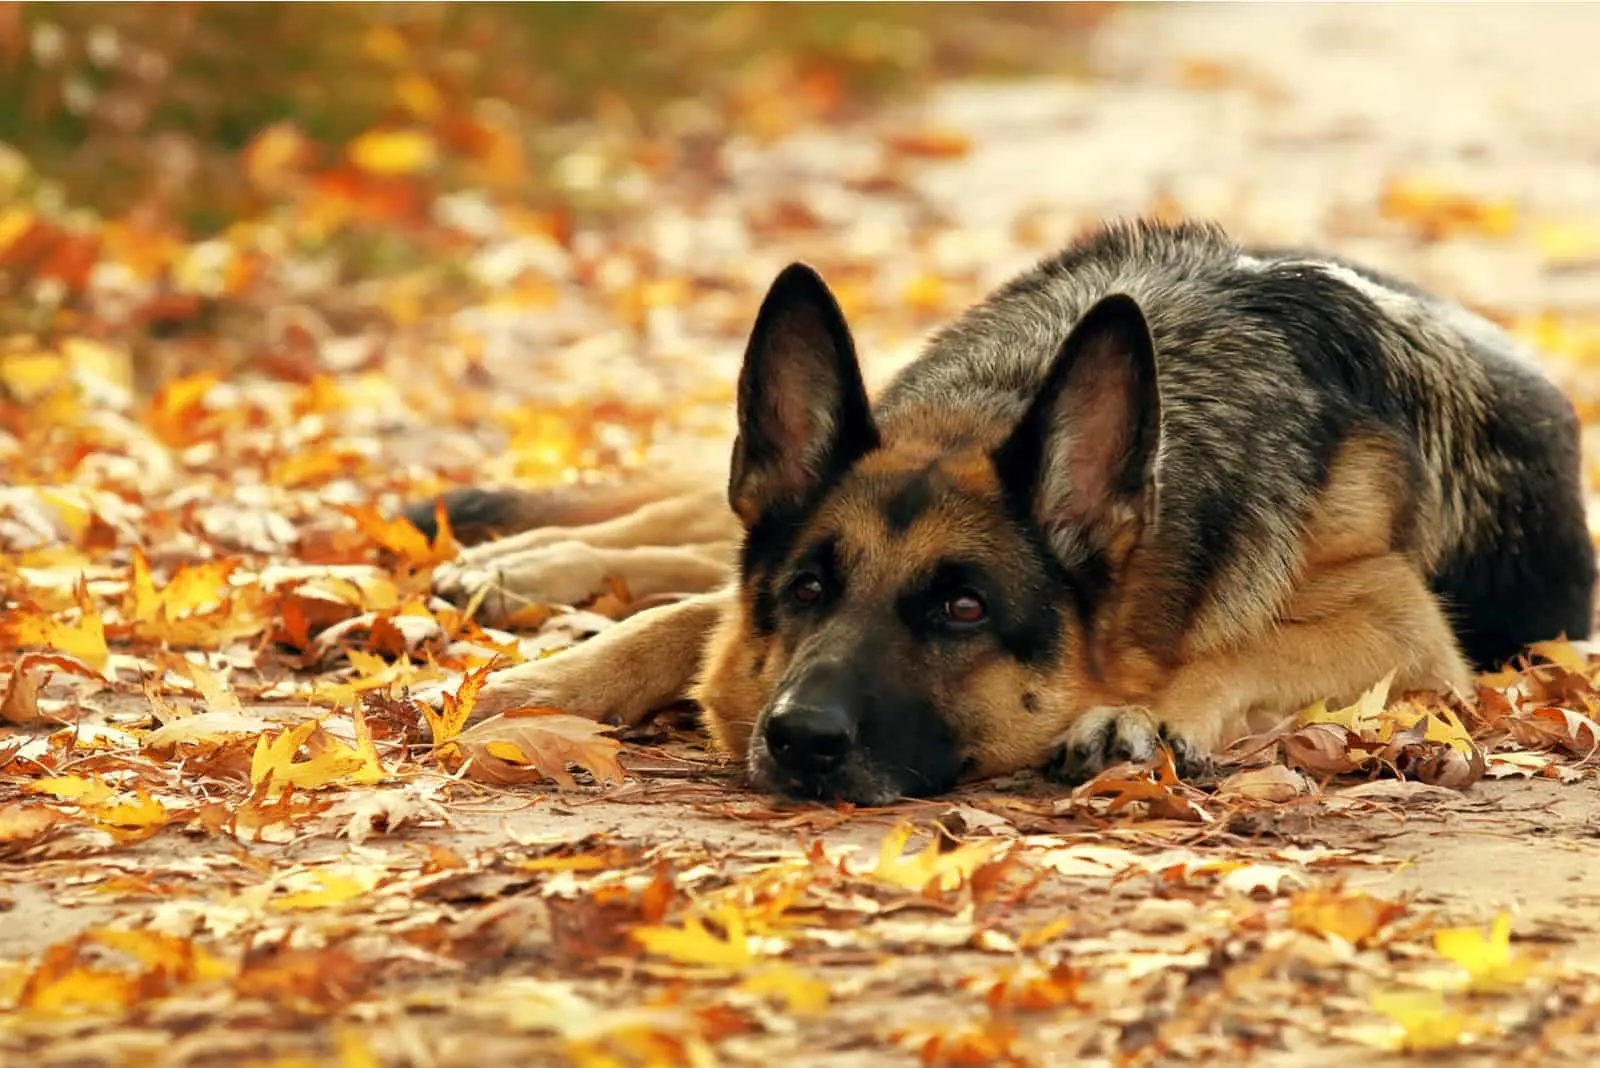 Dog German shepherd lying outdoors